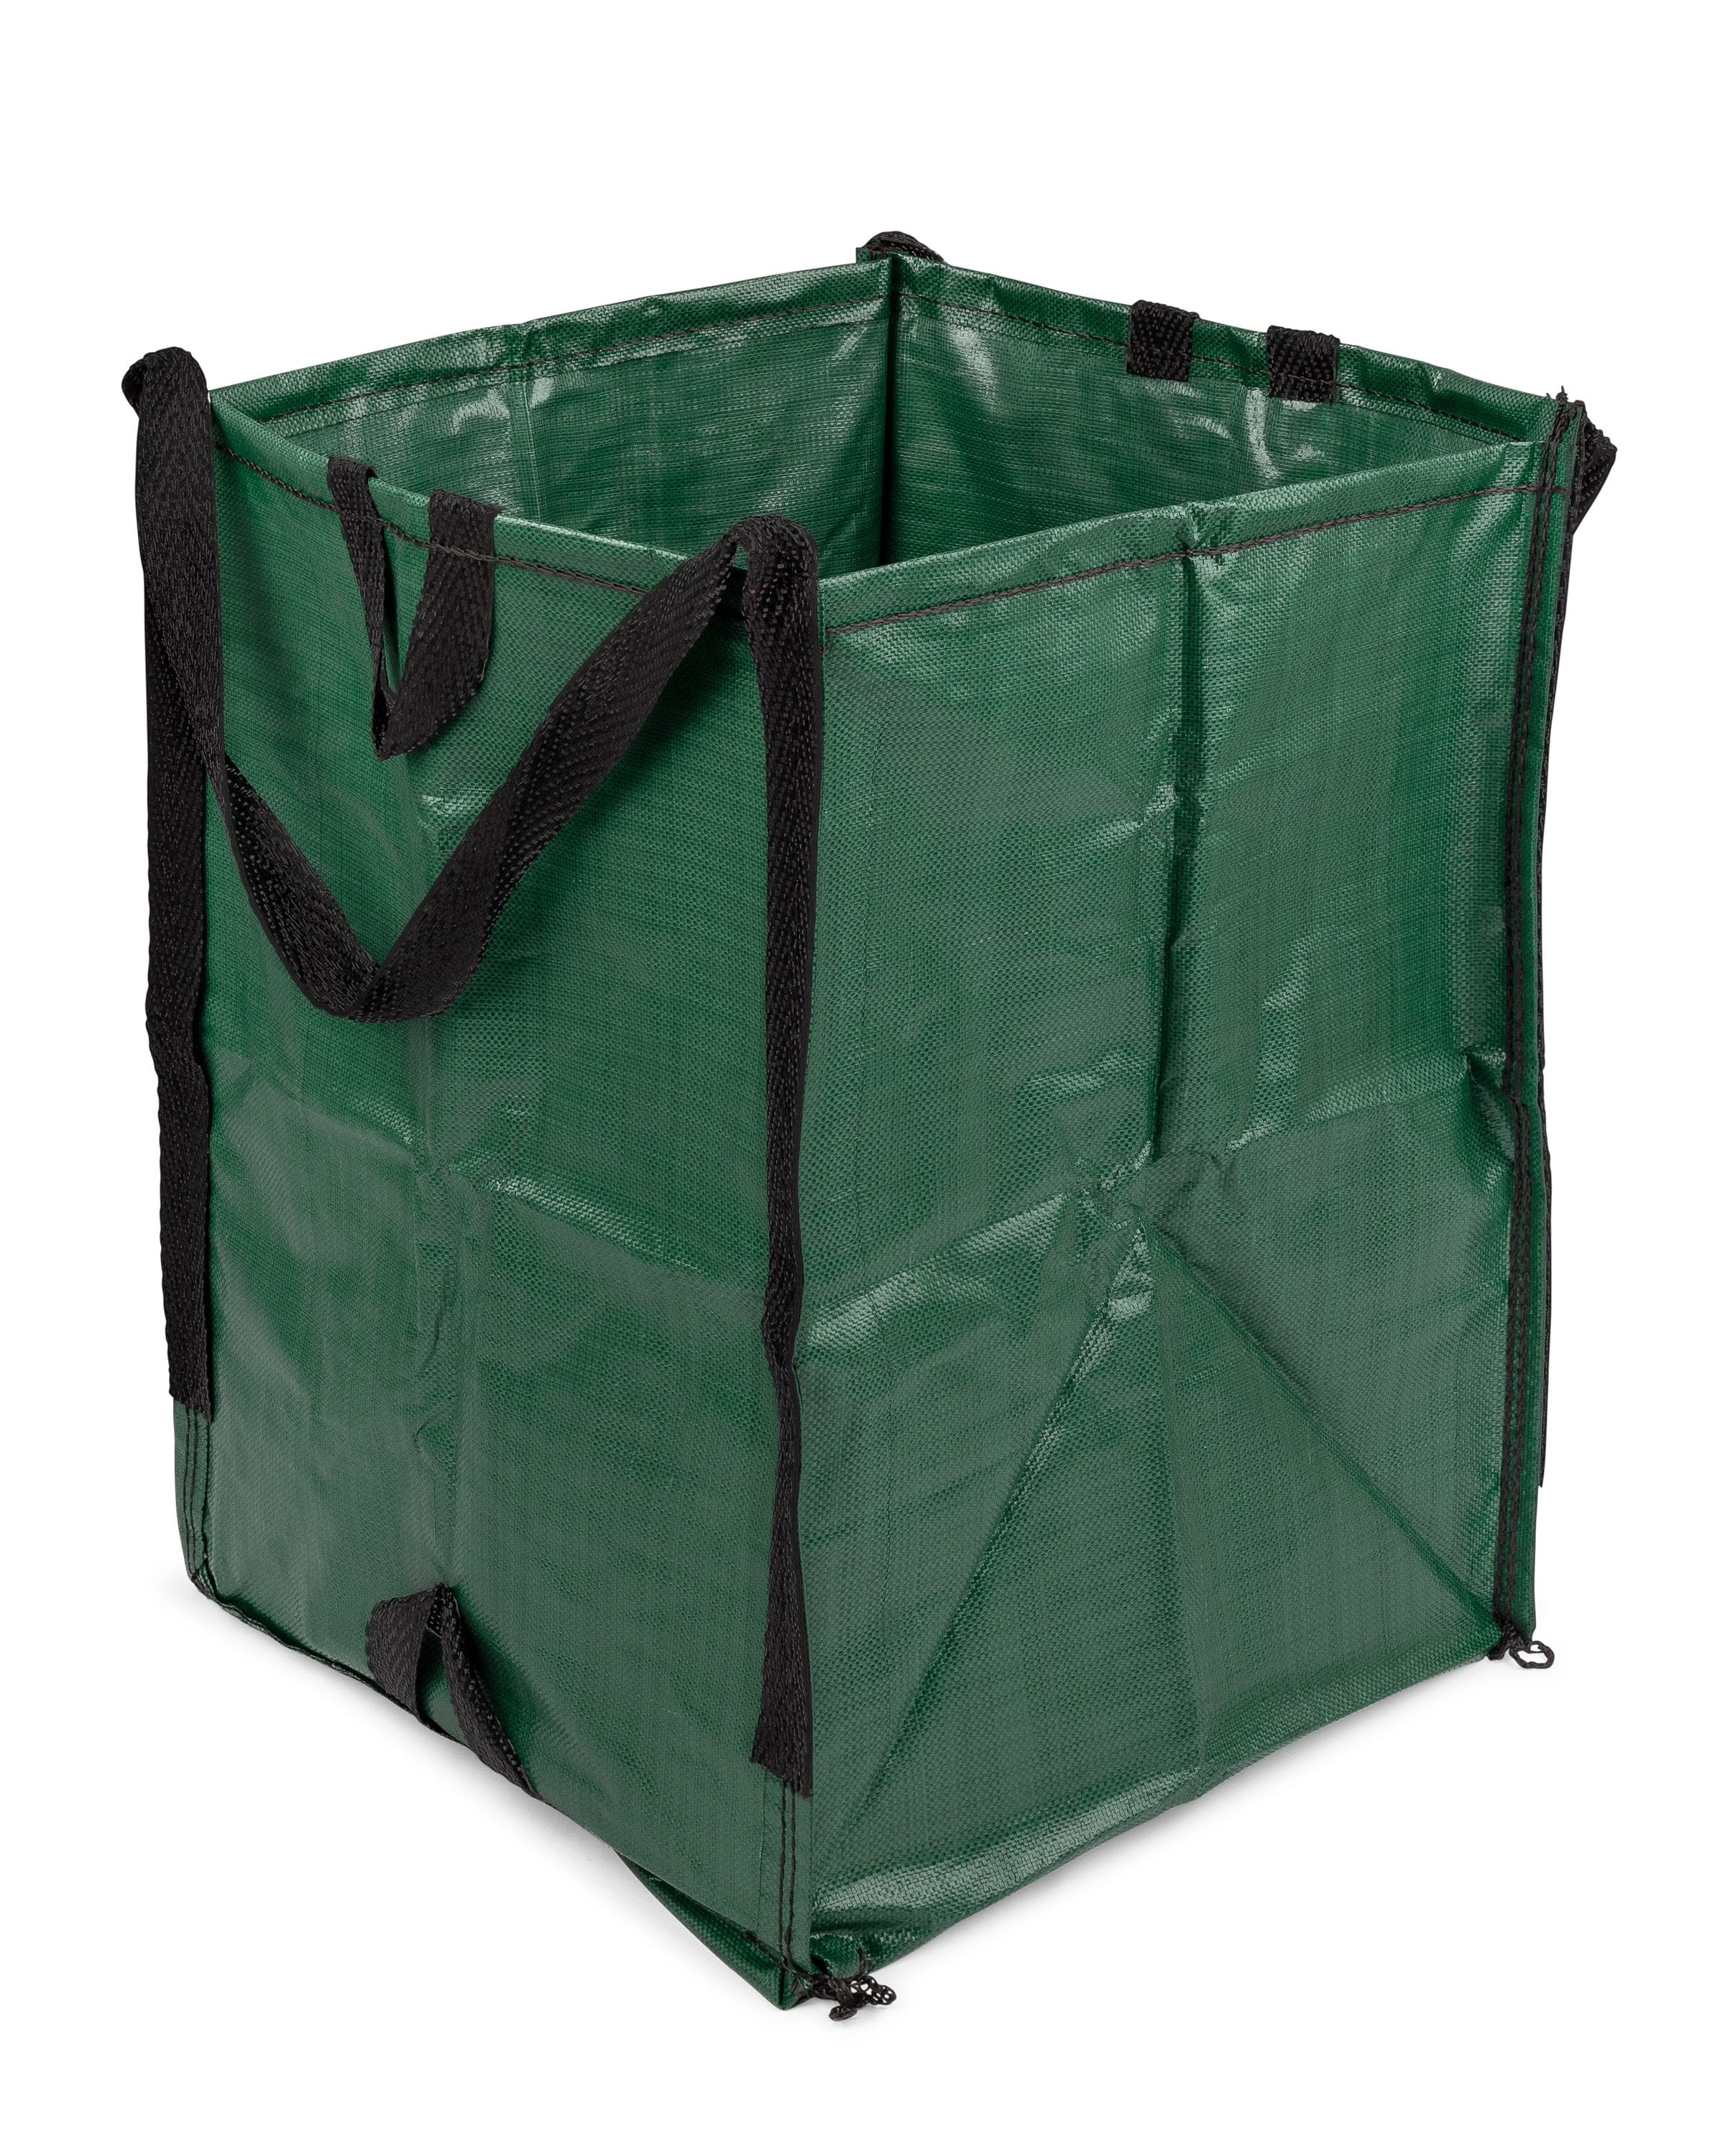 Bag Butler Lawn and Leaf Trash Bag Holder